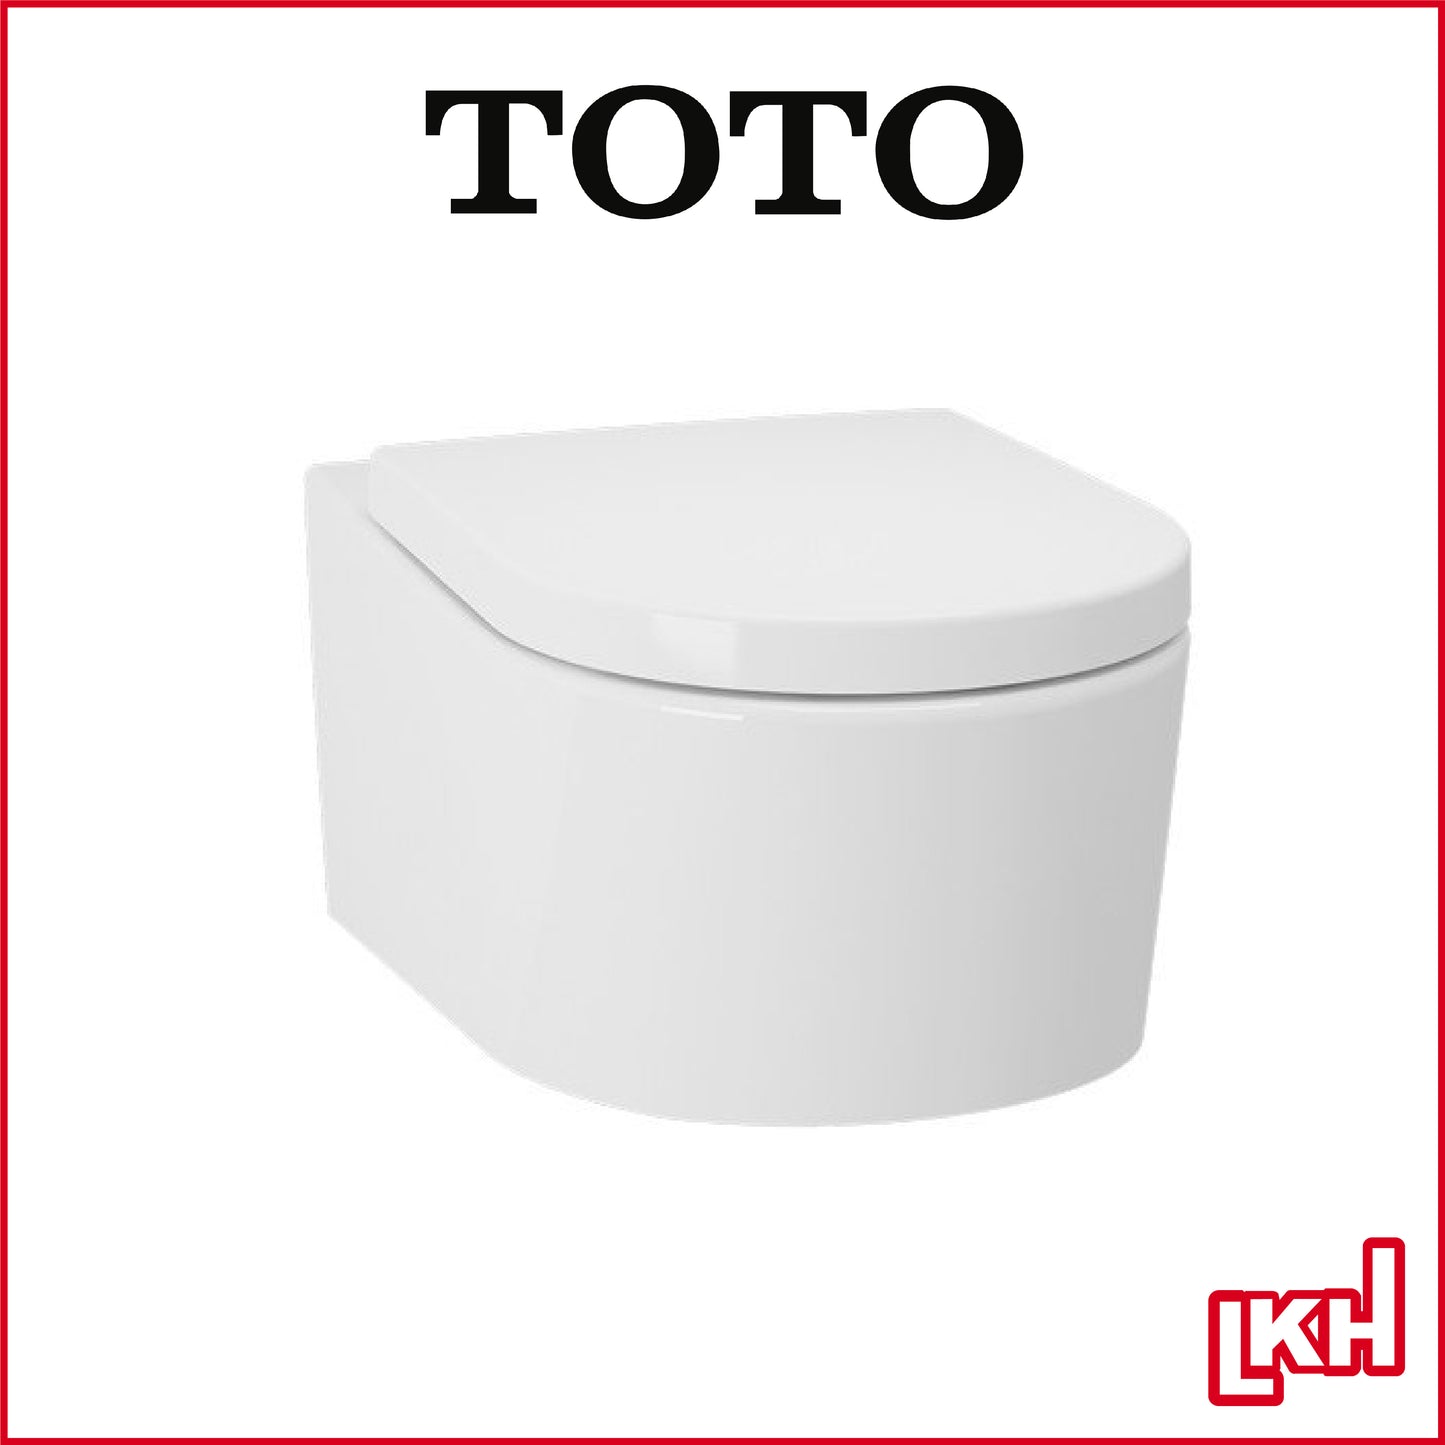 toto wall hung toilet bowl